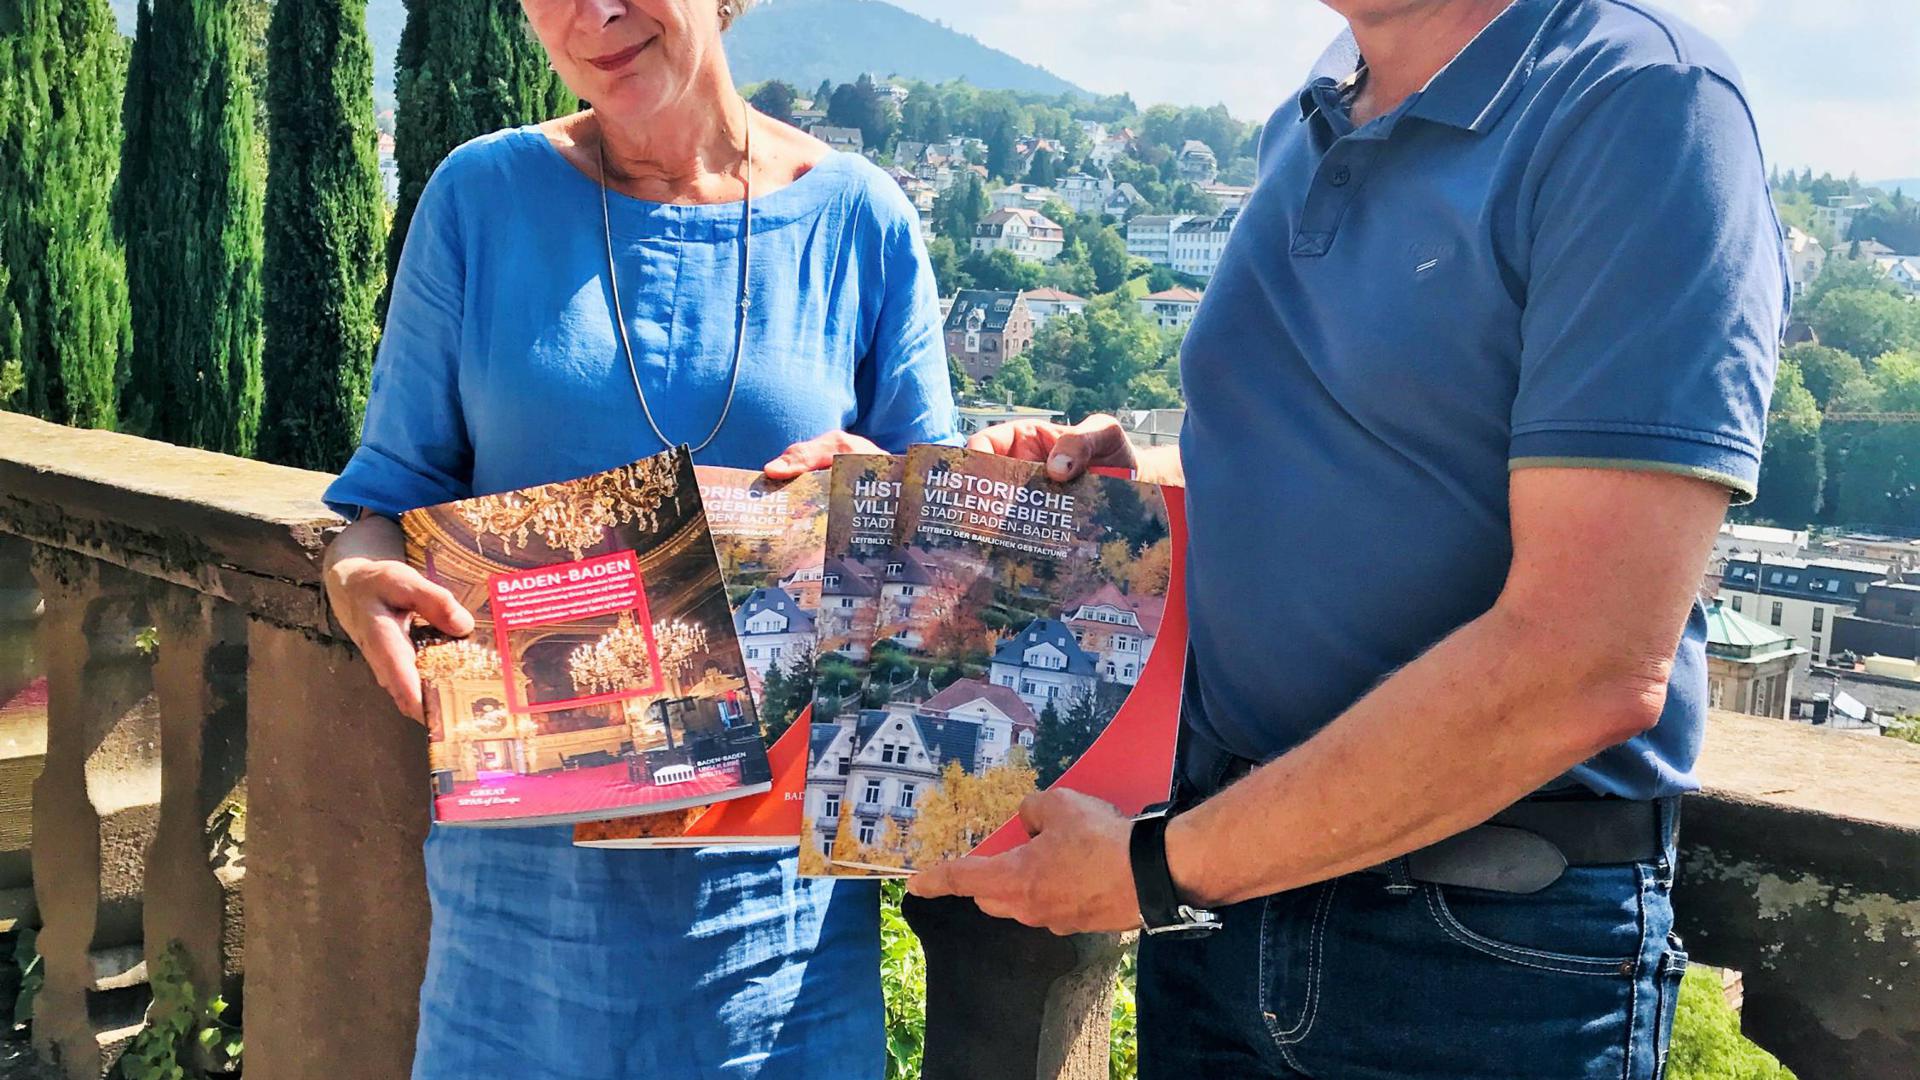 Die Baufibel und eine Broschüre zur Welterbe-Bewerbung zeigen Lisa Poetschki und Alexander Uhlig auf der Schlossbergterrasse – im Hintergrund das Villengebiet Annaberg.